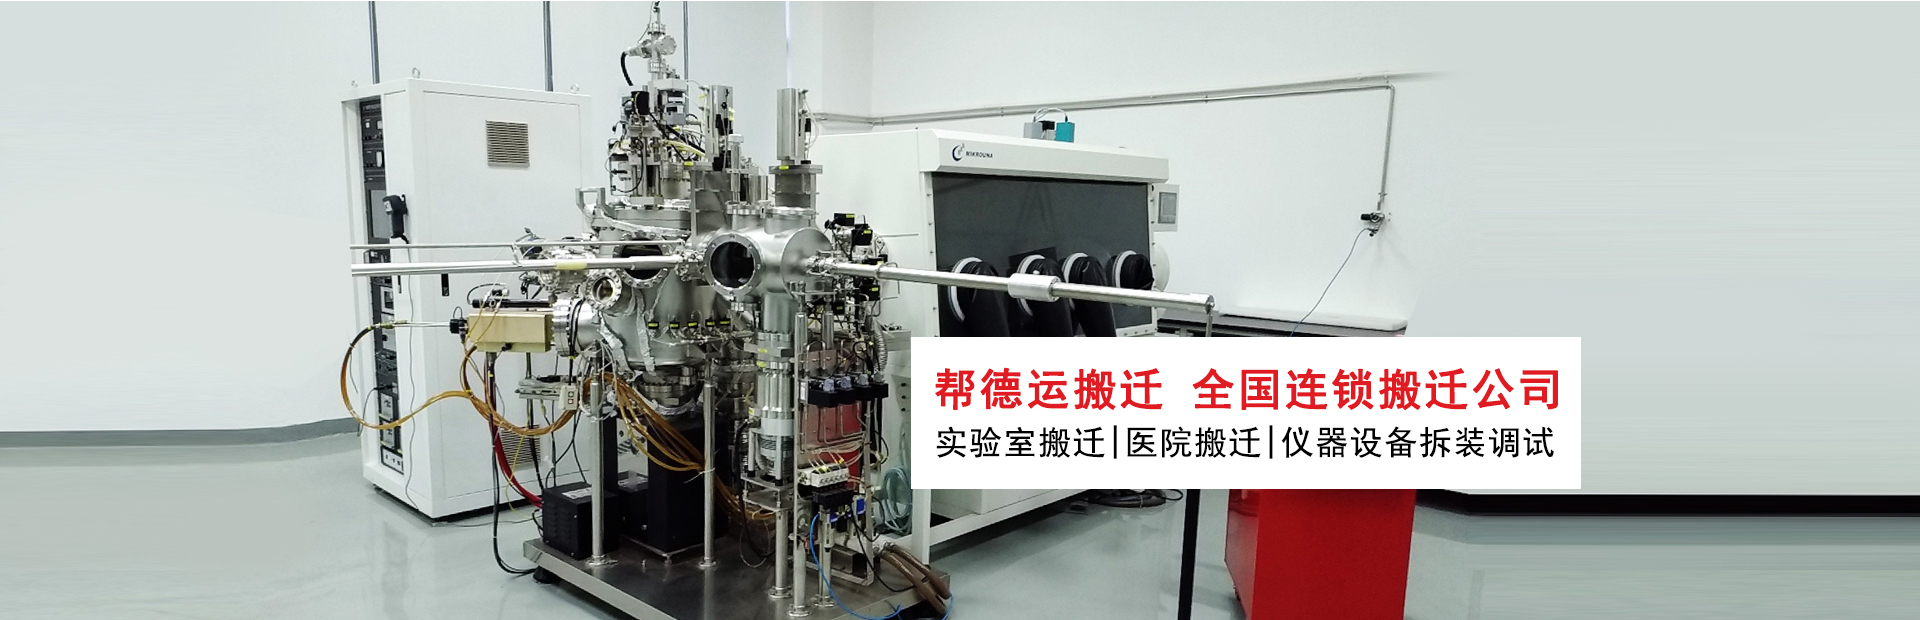 深圳实验室仪器设备搬迁